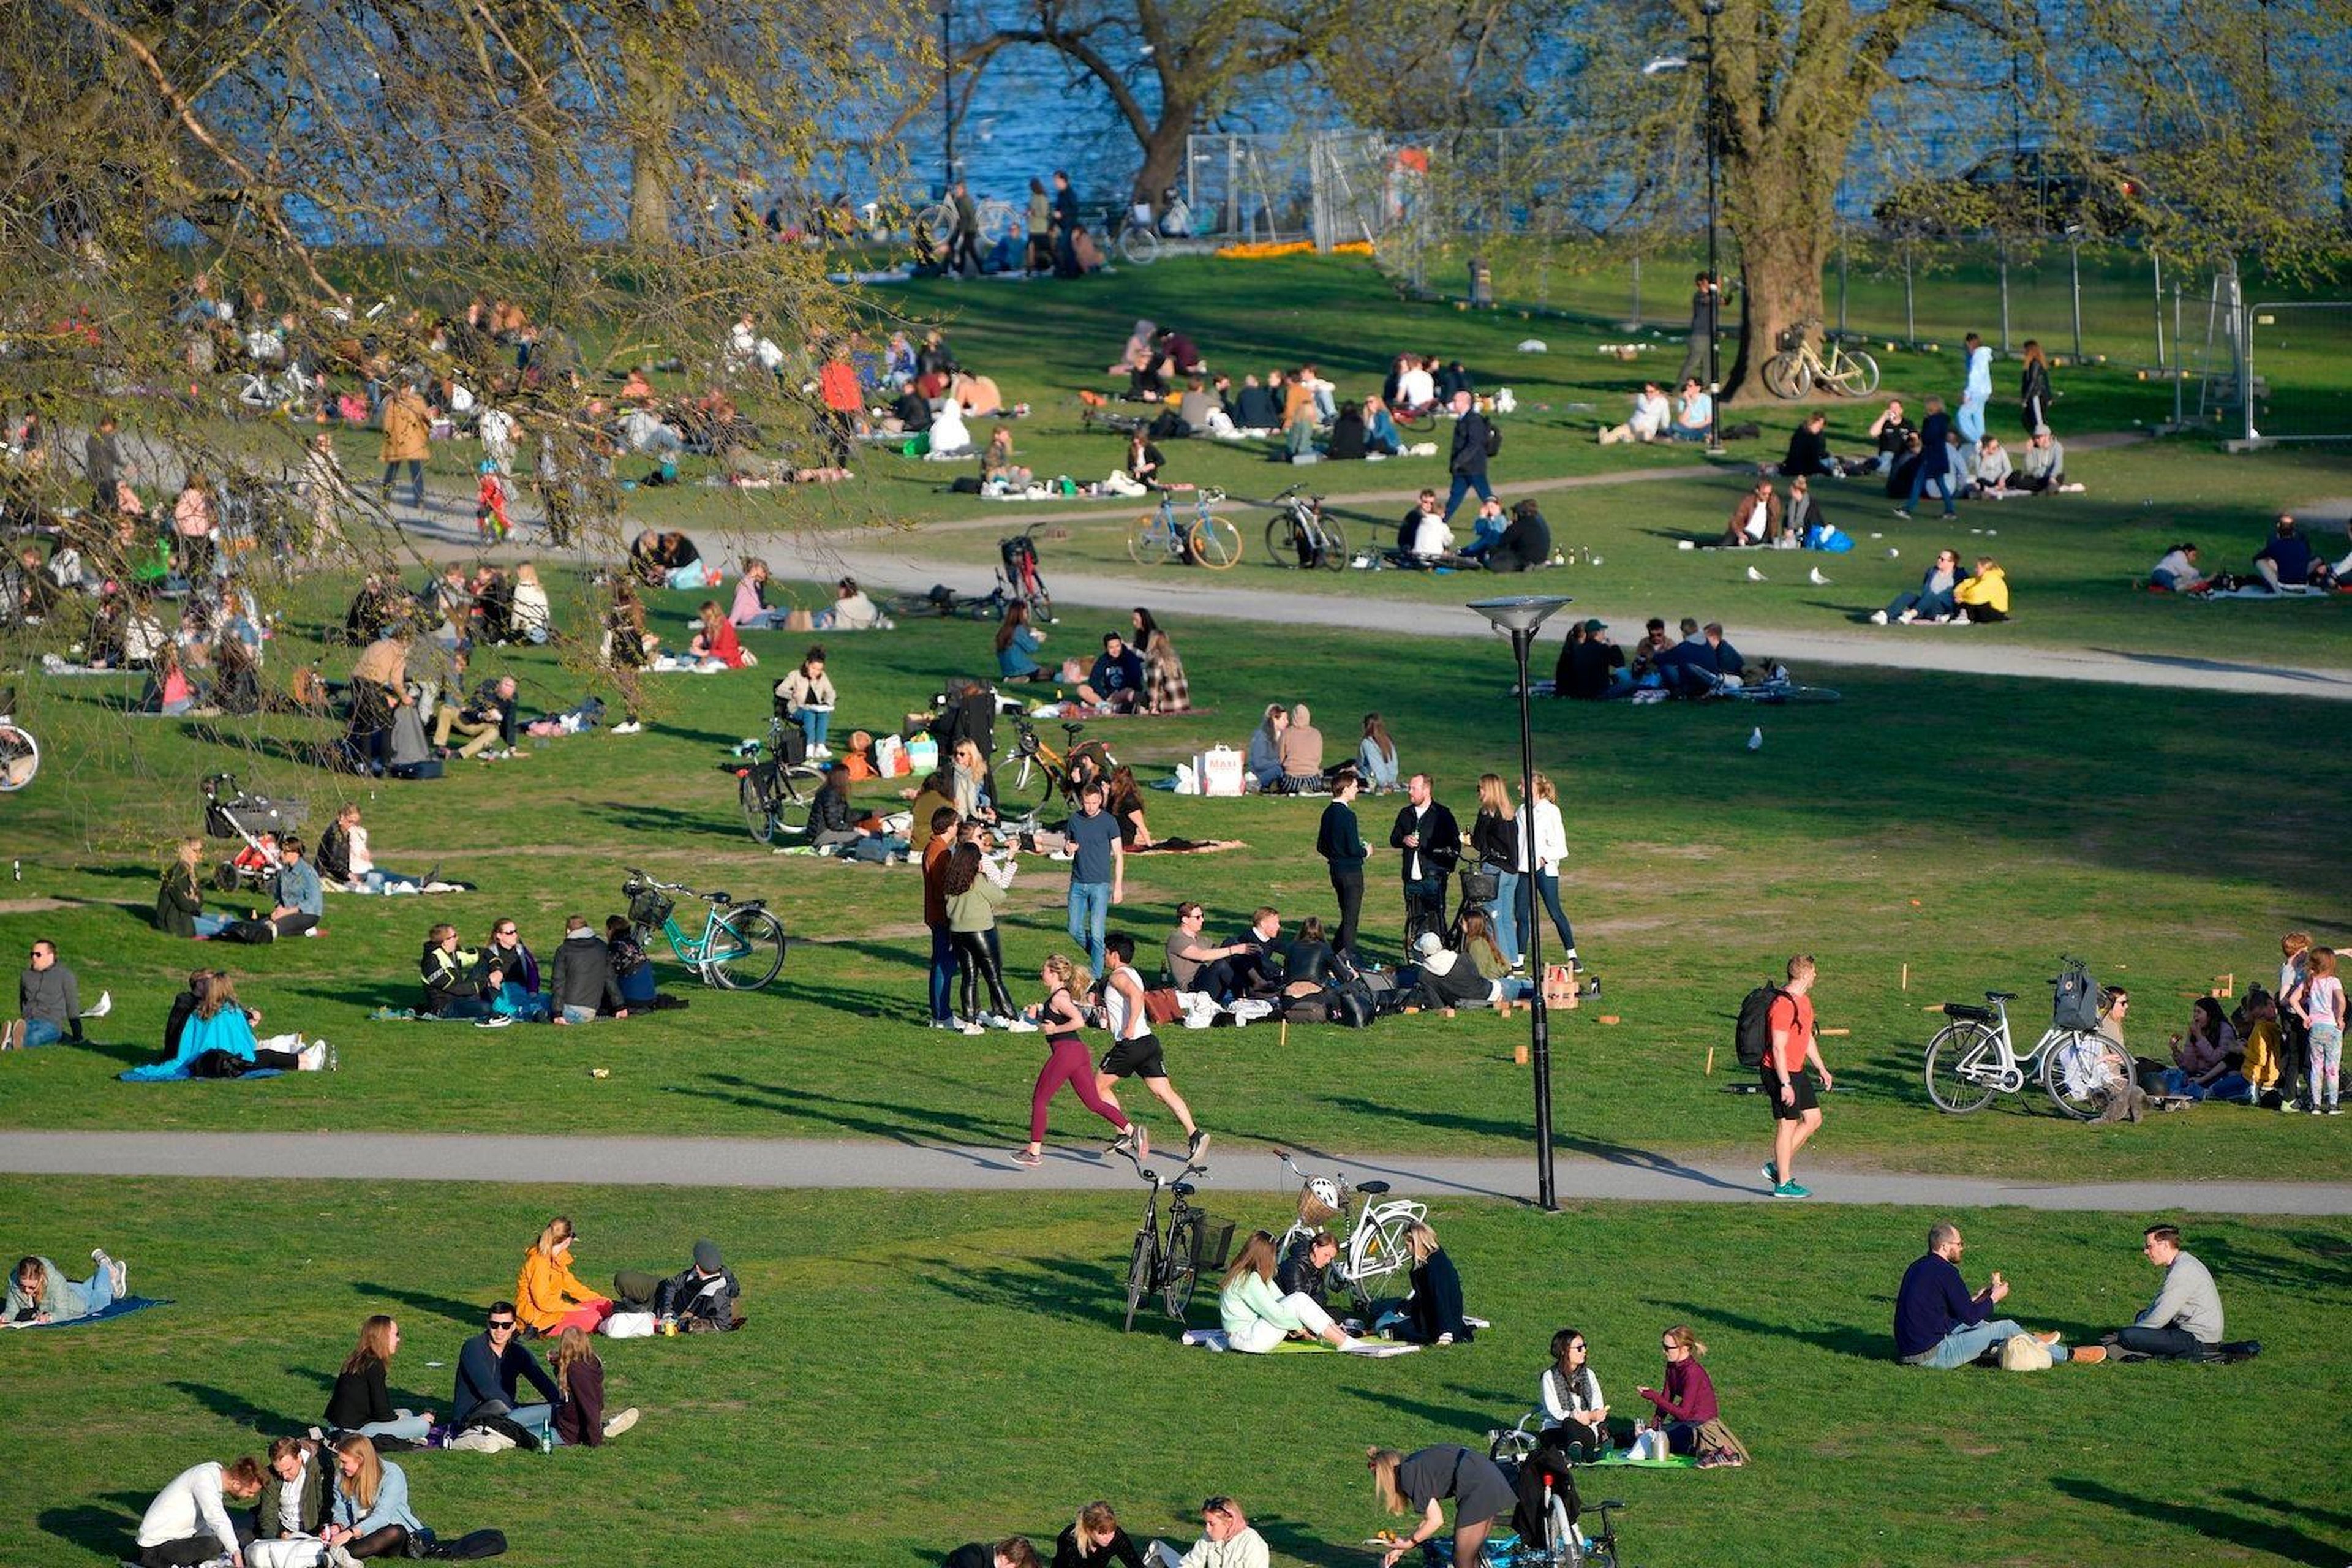 Gente disfrutando de un día primaveral durante el brote de coronavirus en Estocolmo, Suecia, el 22 de abril de 2020.